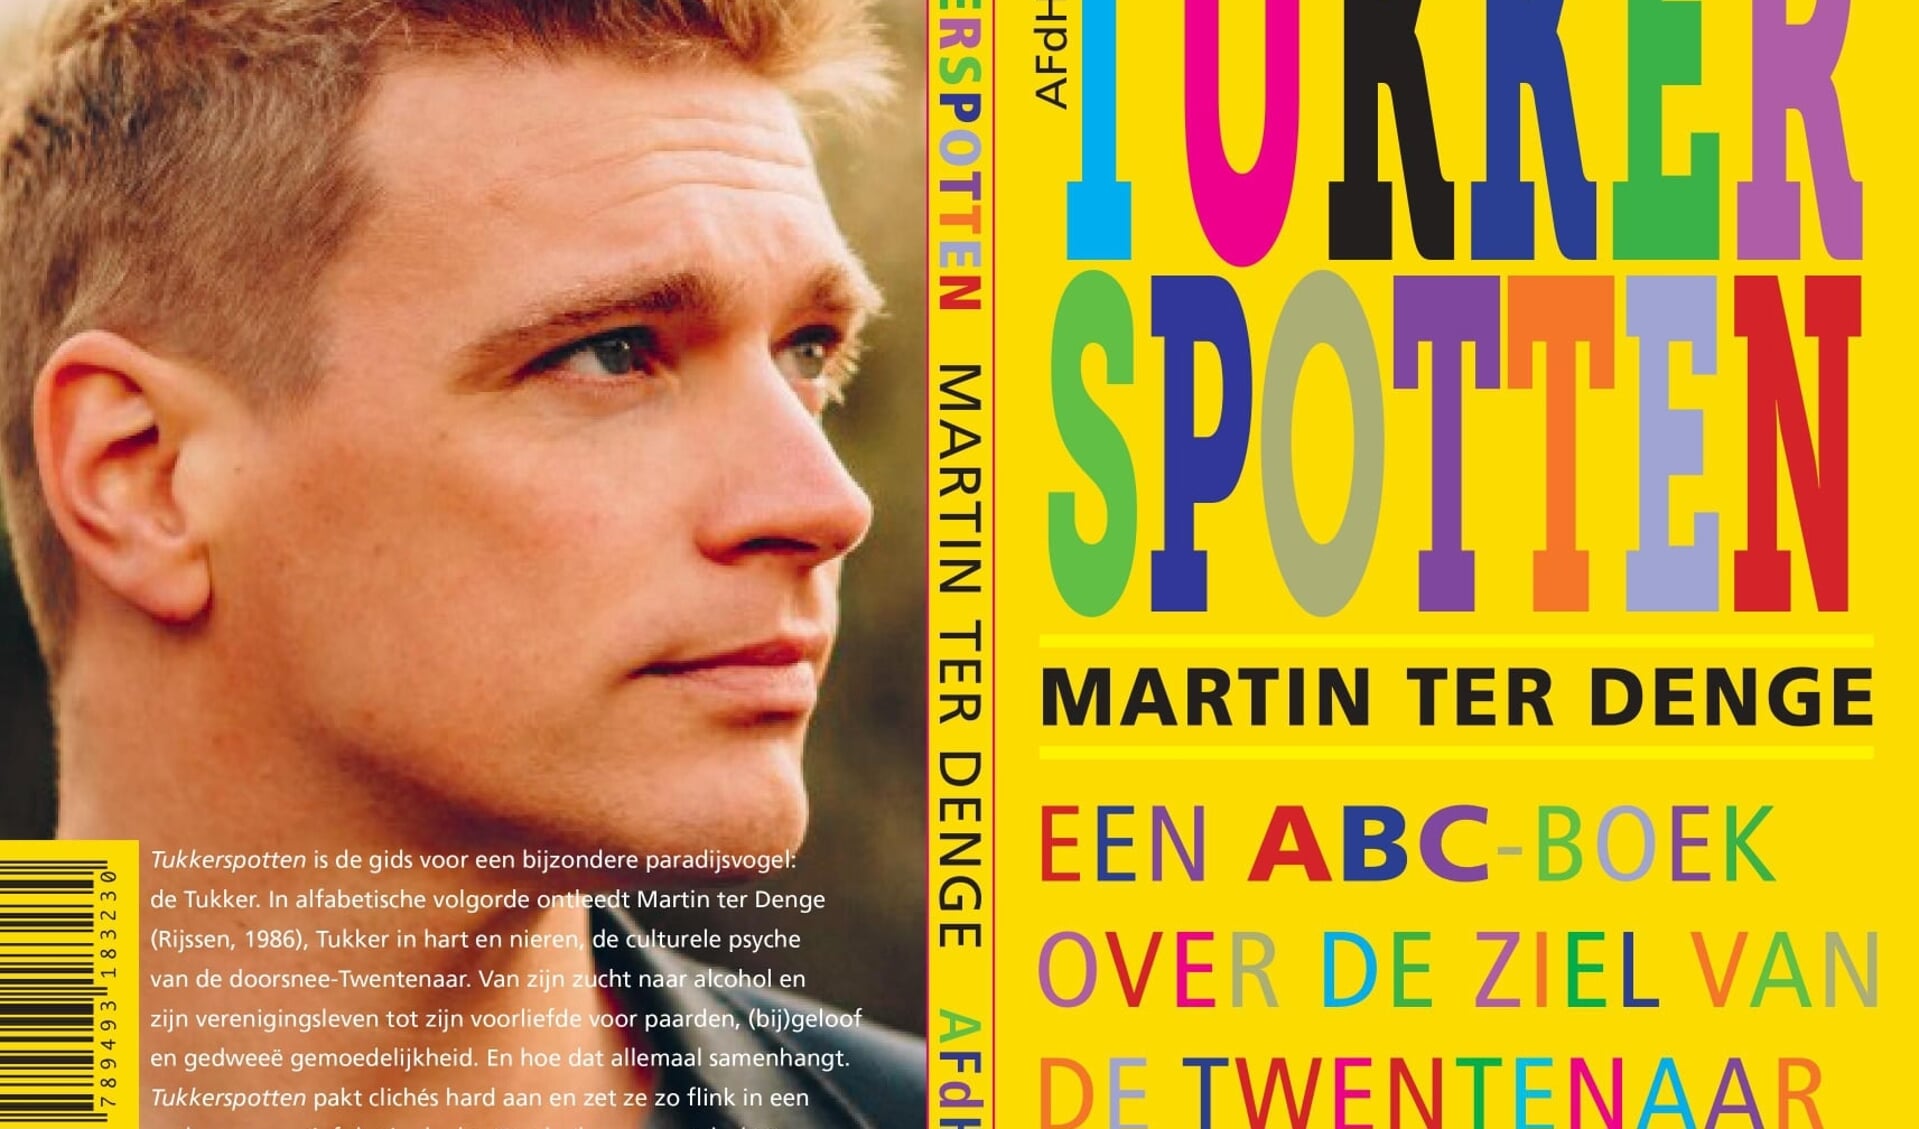 Het nieuwe boek Tukkerspotten van Martin ter Denge wordt op 24 juli gepresenteerd via Facebook Live